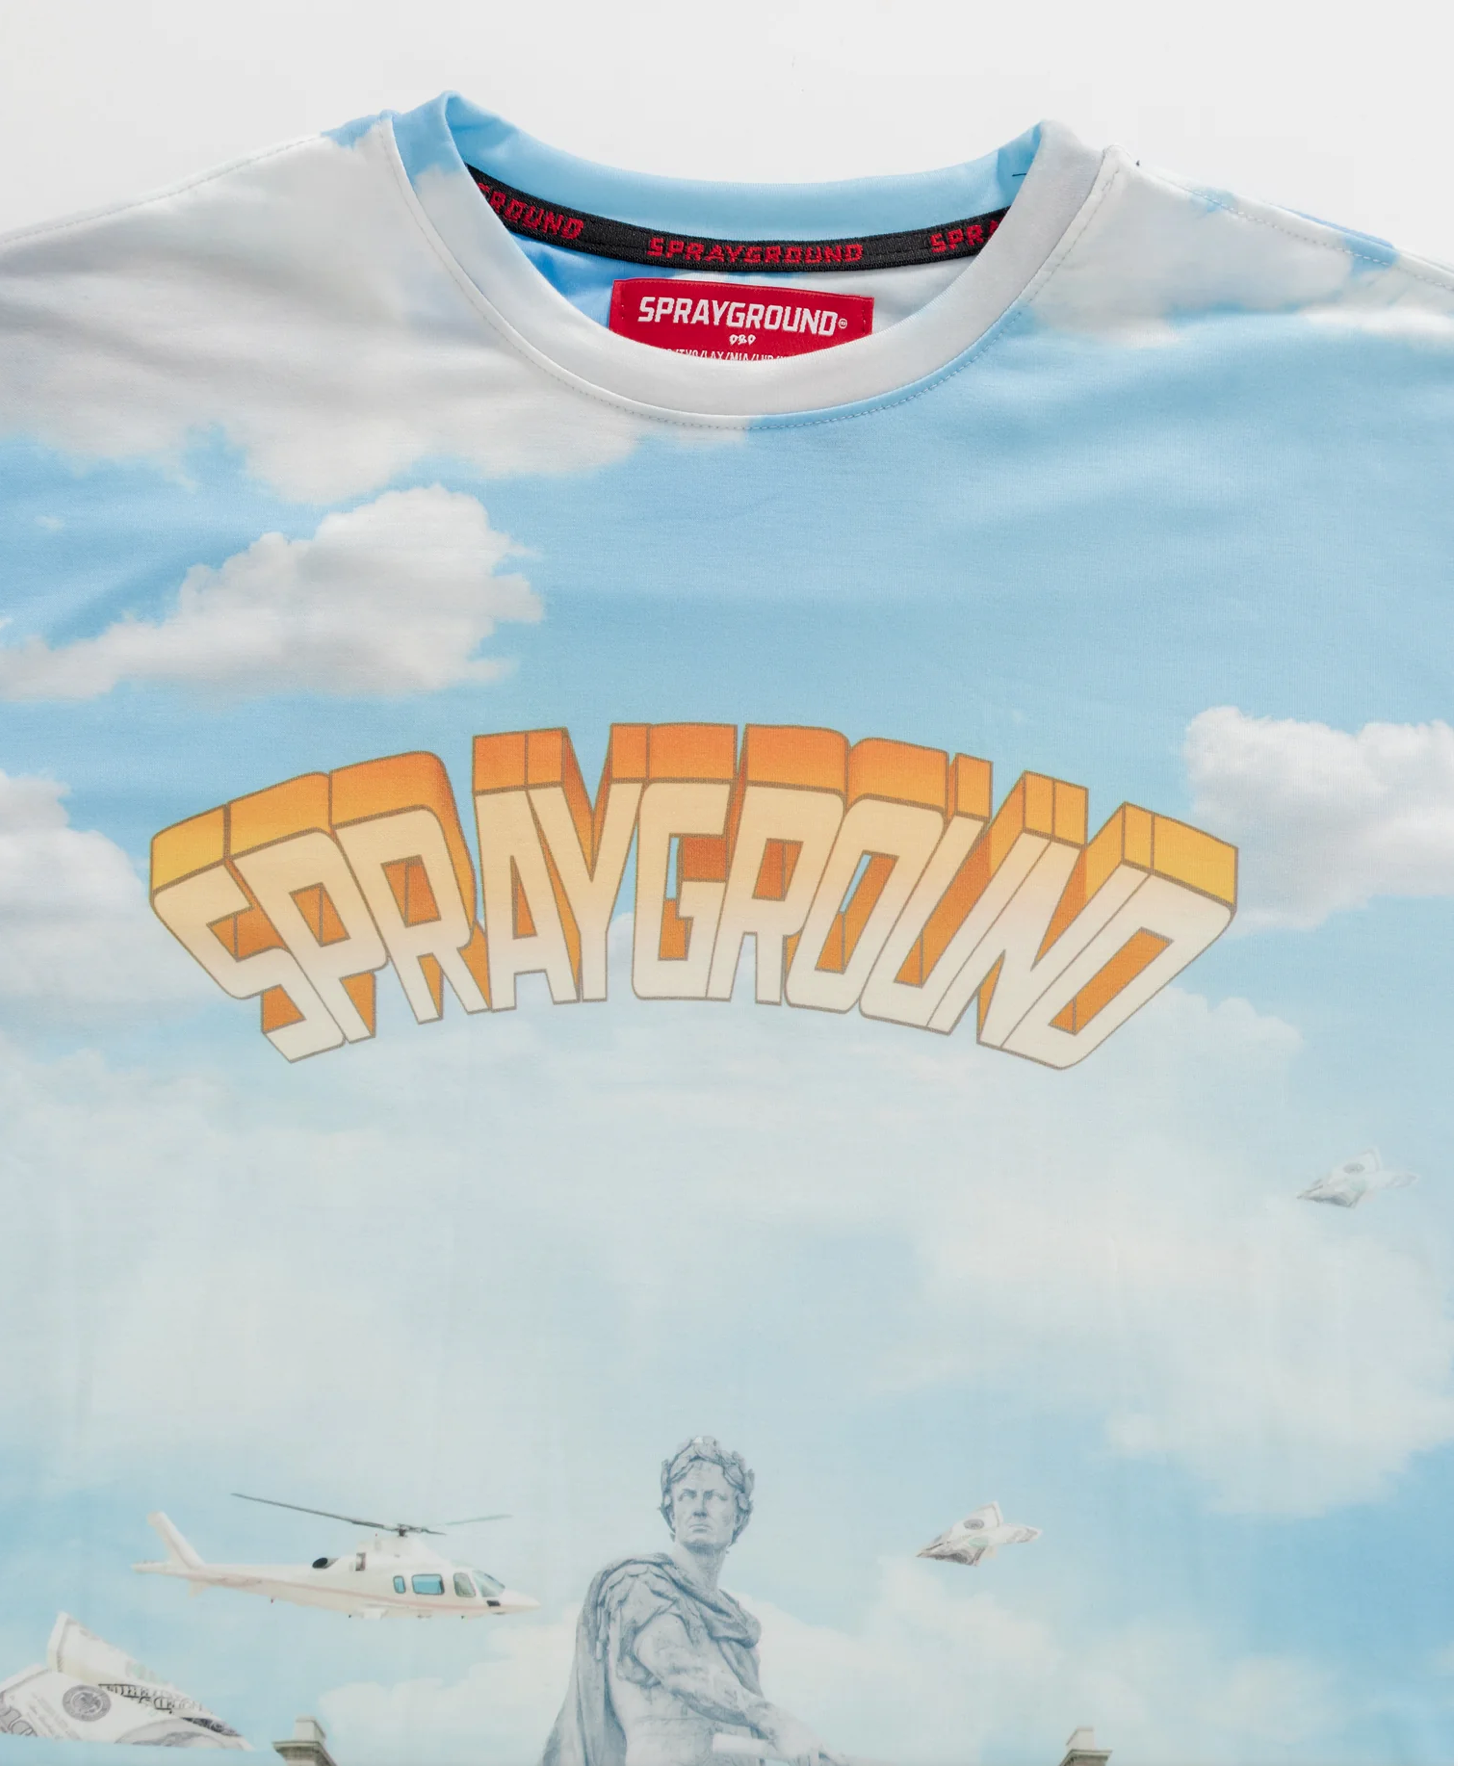 T-shirt SPRAYGROUND underwater shark island SP510